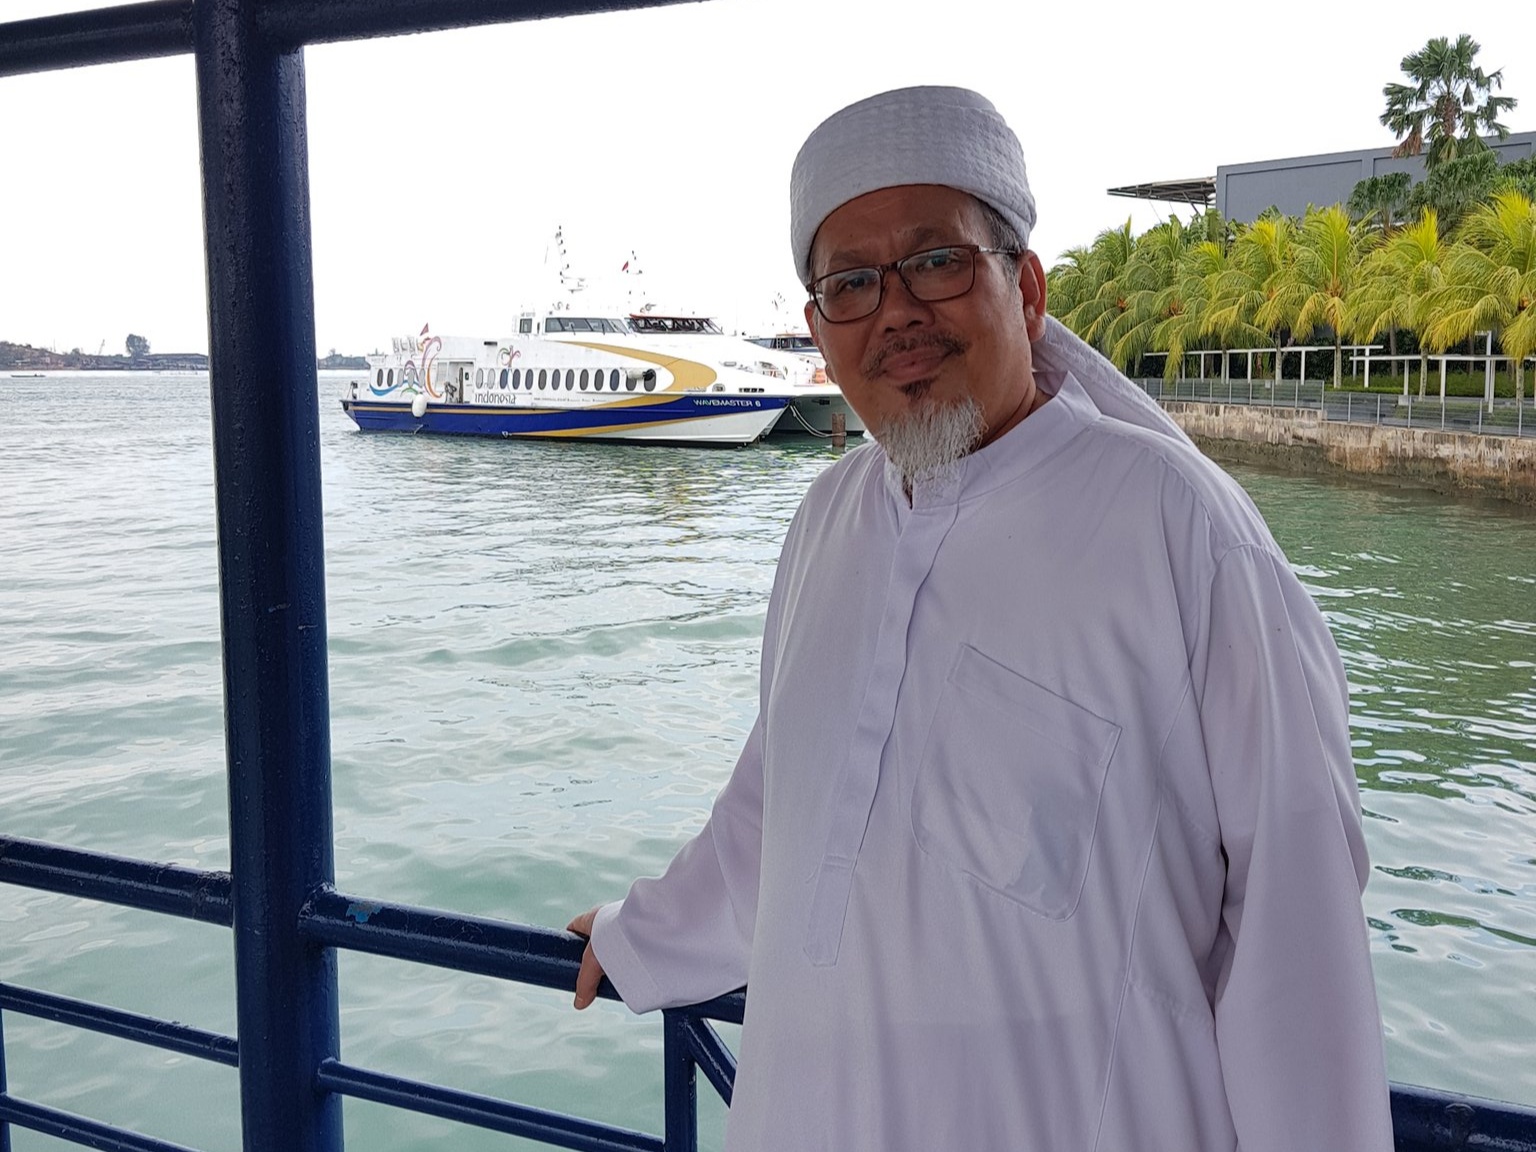 Mengakui Salah, Ustaz Tengku Zulkarnain Minta Maaf